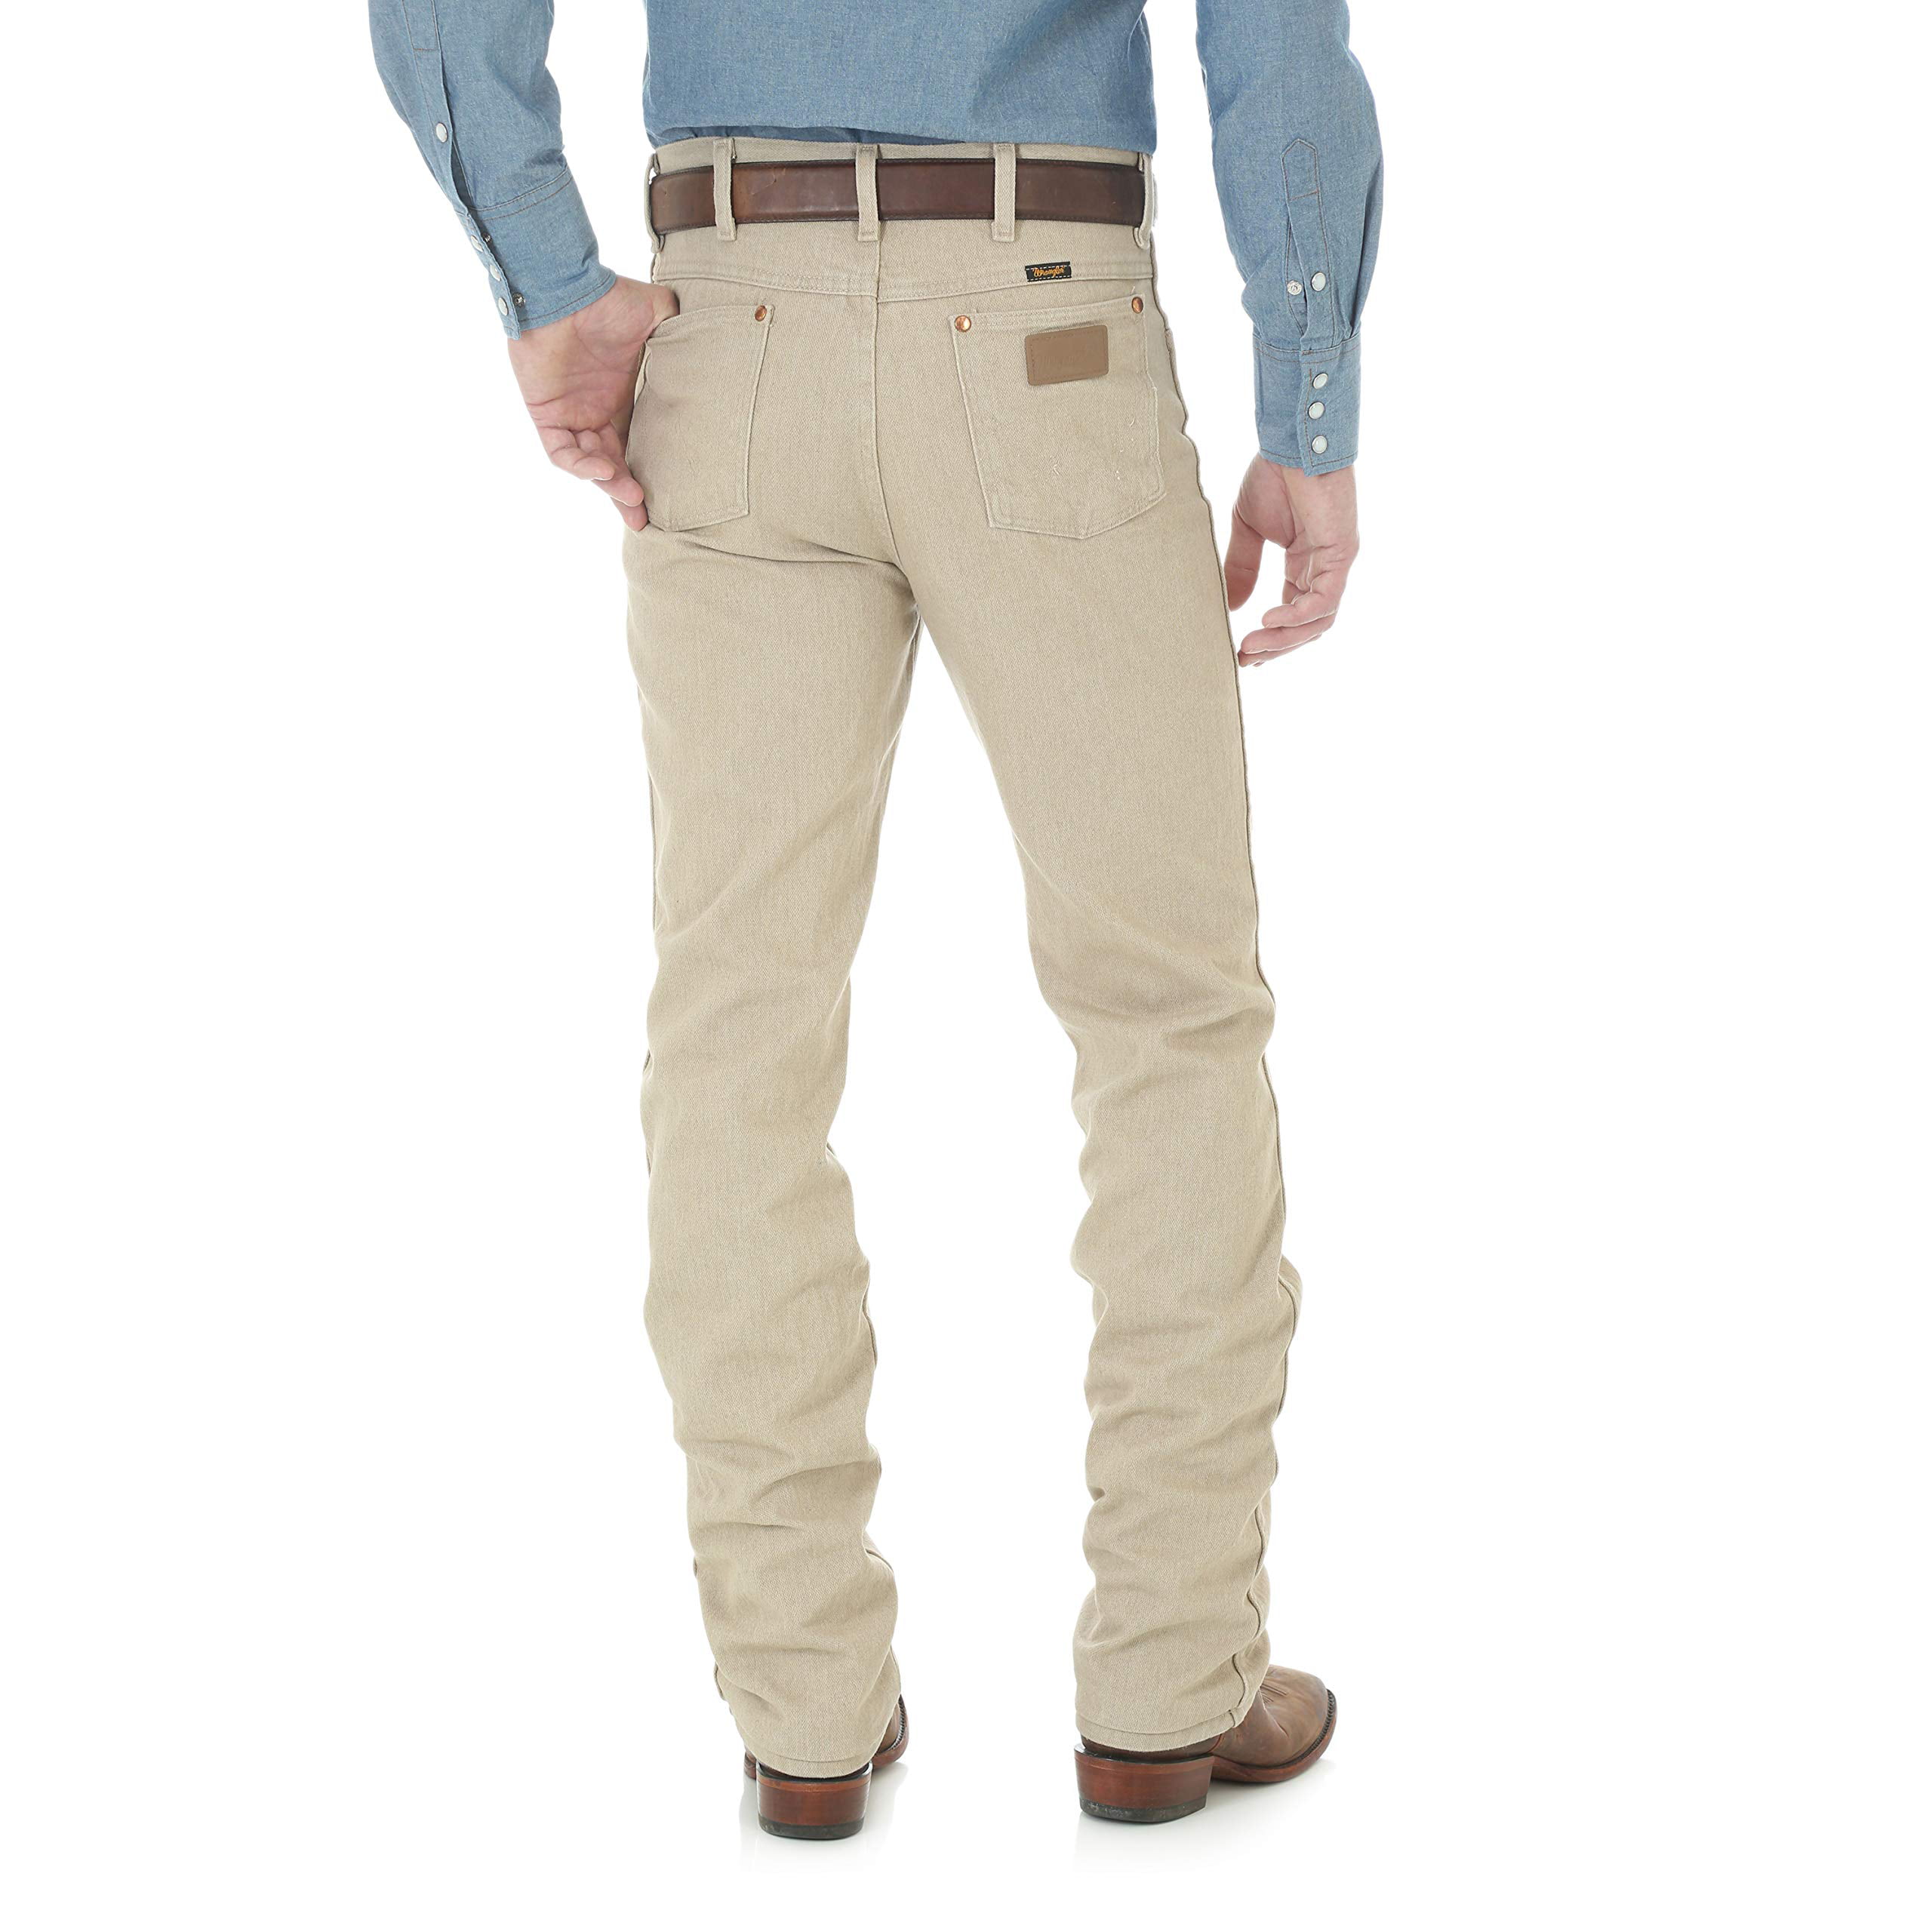 Wrangler Cowboy Cut Slim Fit Jeans, 936TAN, Tan , Size 35X30 